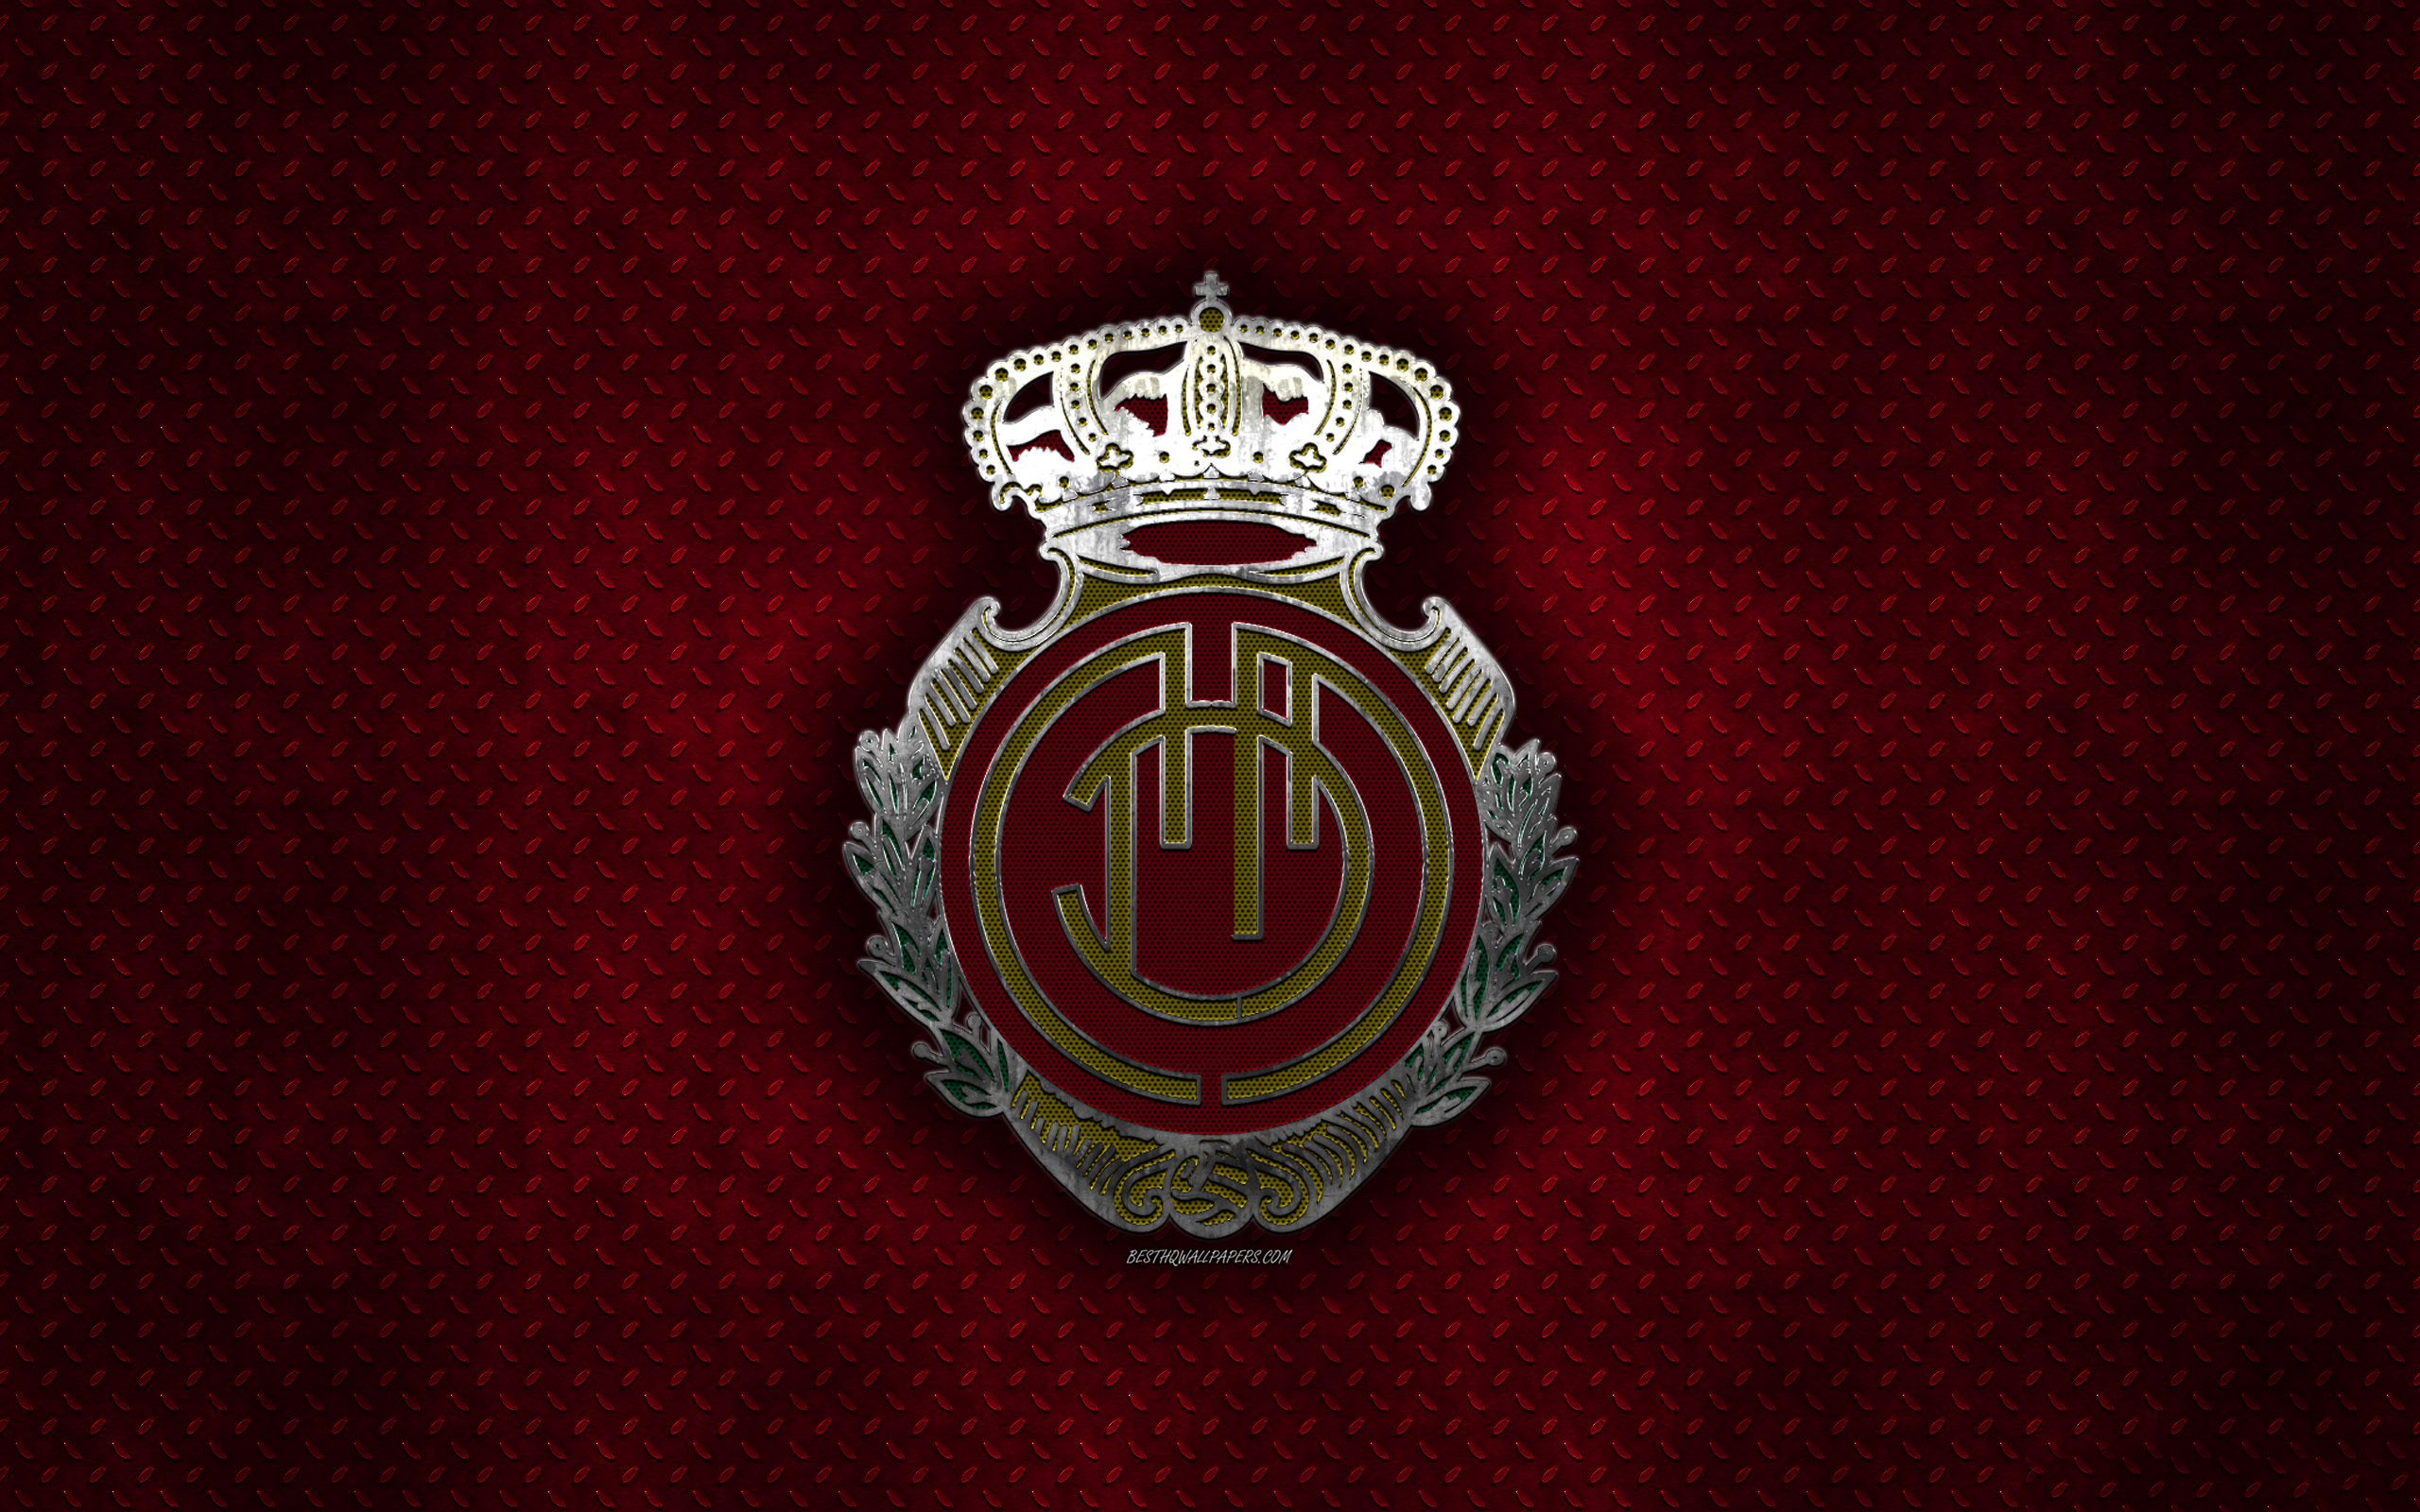 Rcd Mallorca, Spanish Football Club, Red Metal Texture, - Emblem - HD Wallpaper 